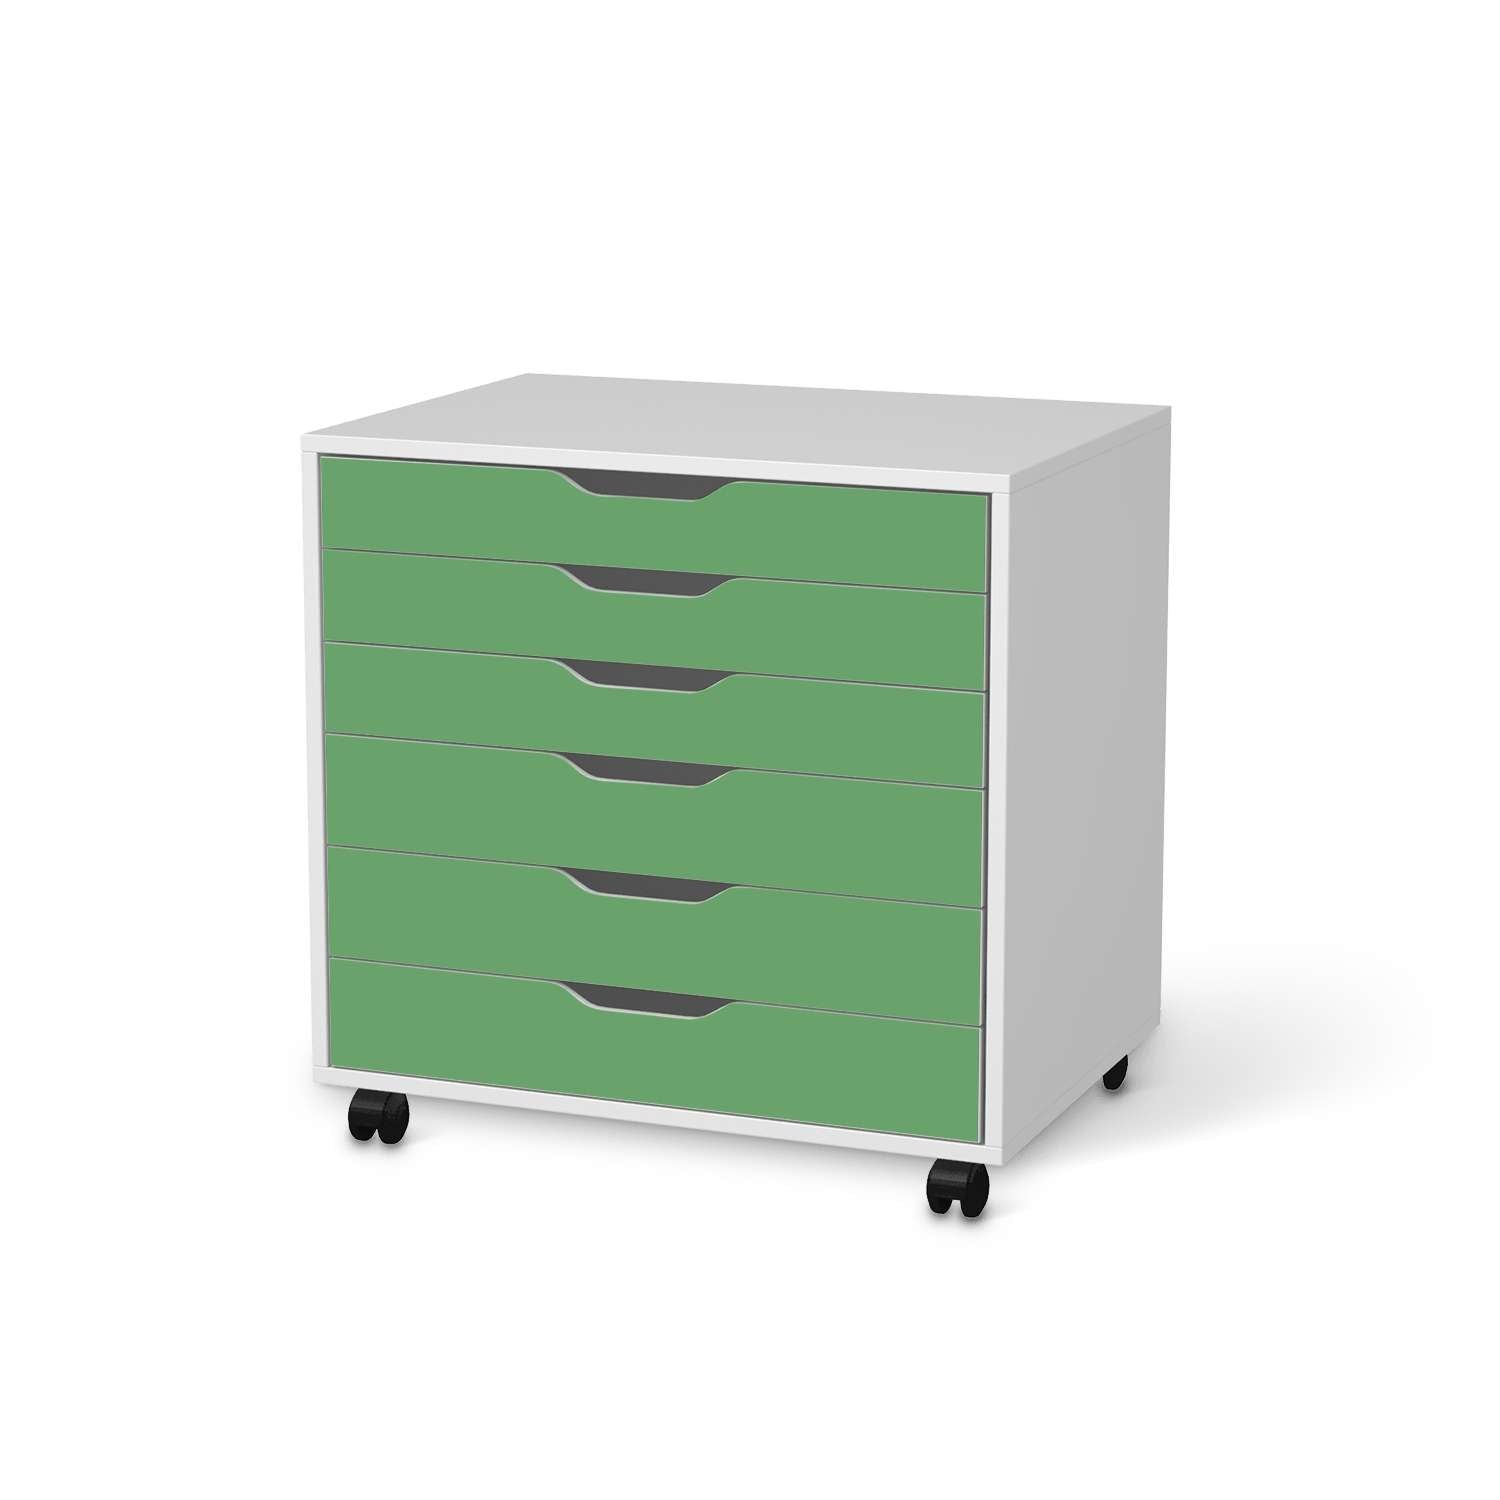 M?belfolie IKEA Alex Rollcontainer 6 Schubladen - Design: Gr?n Light von creatisto